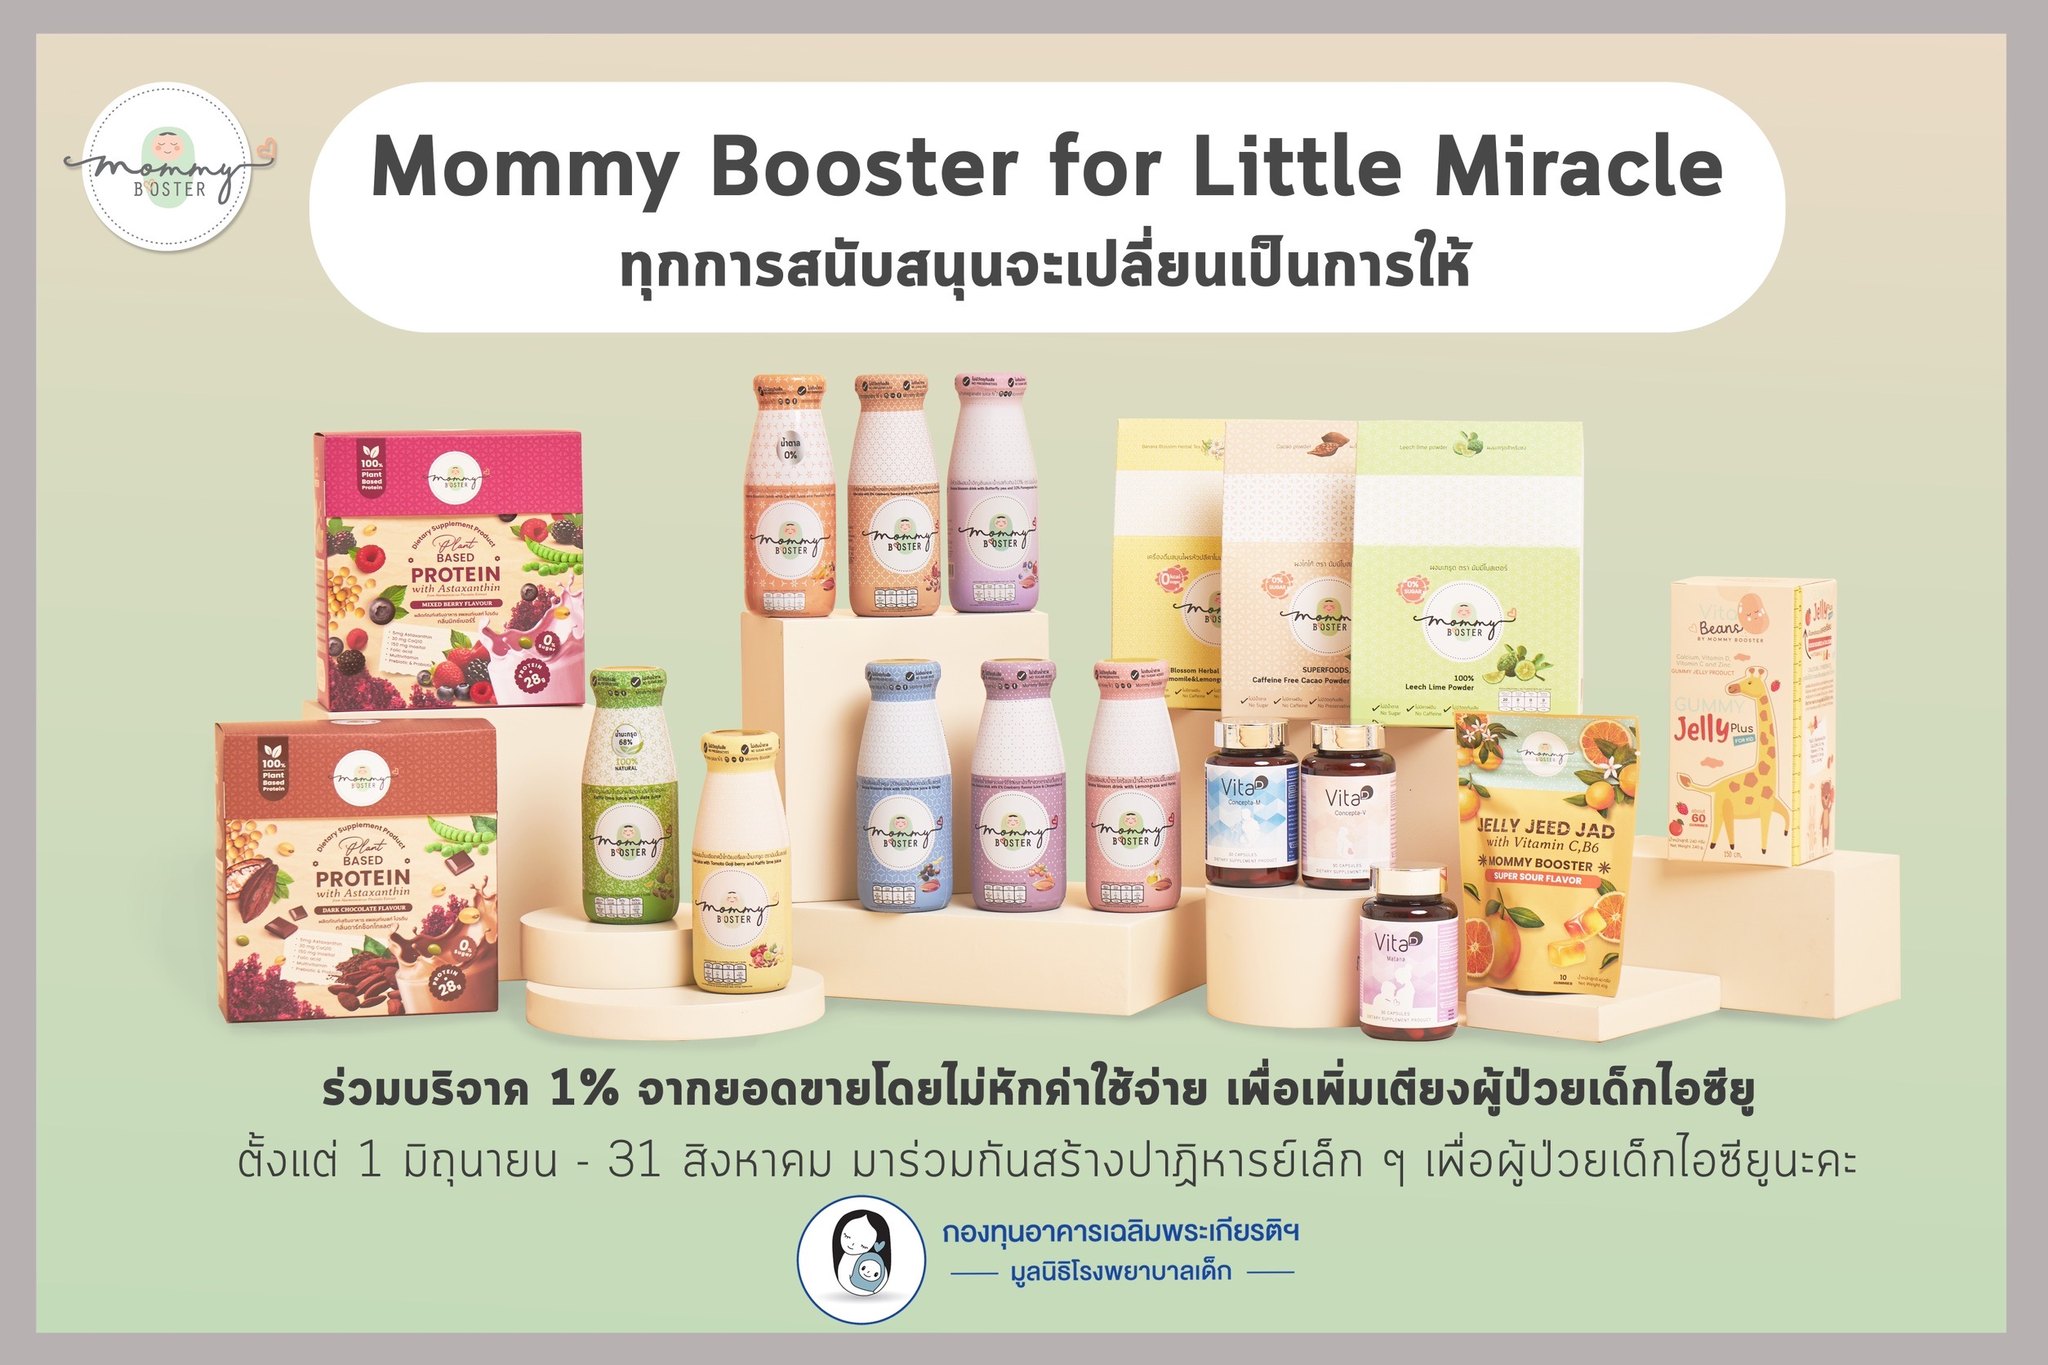 Mommy Booster : Mommy Power 
ส่งต่อพลังบวกและแรงบันดาลใจ ให้คุณแม่ทุกคนเลี้ยงลูกอย่างมีความสุข